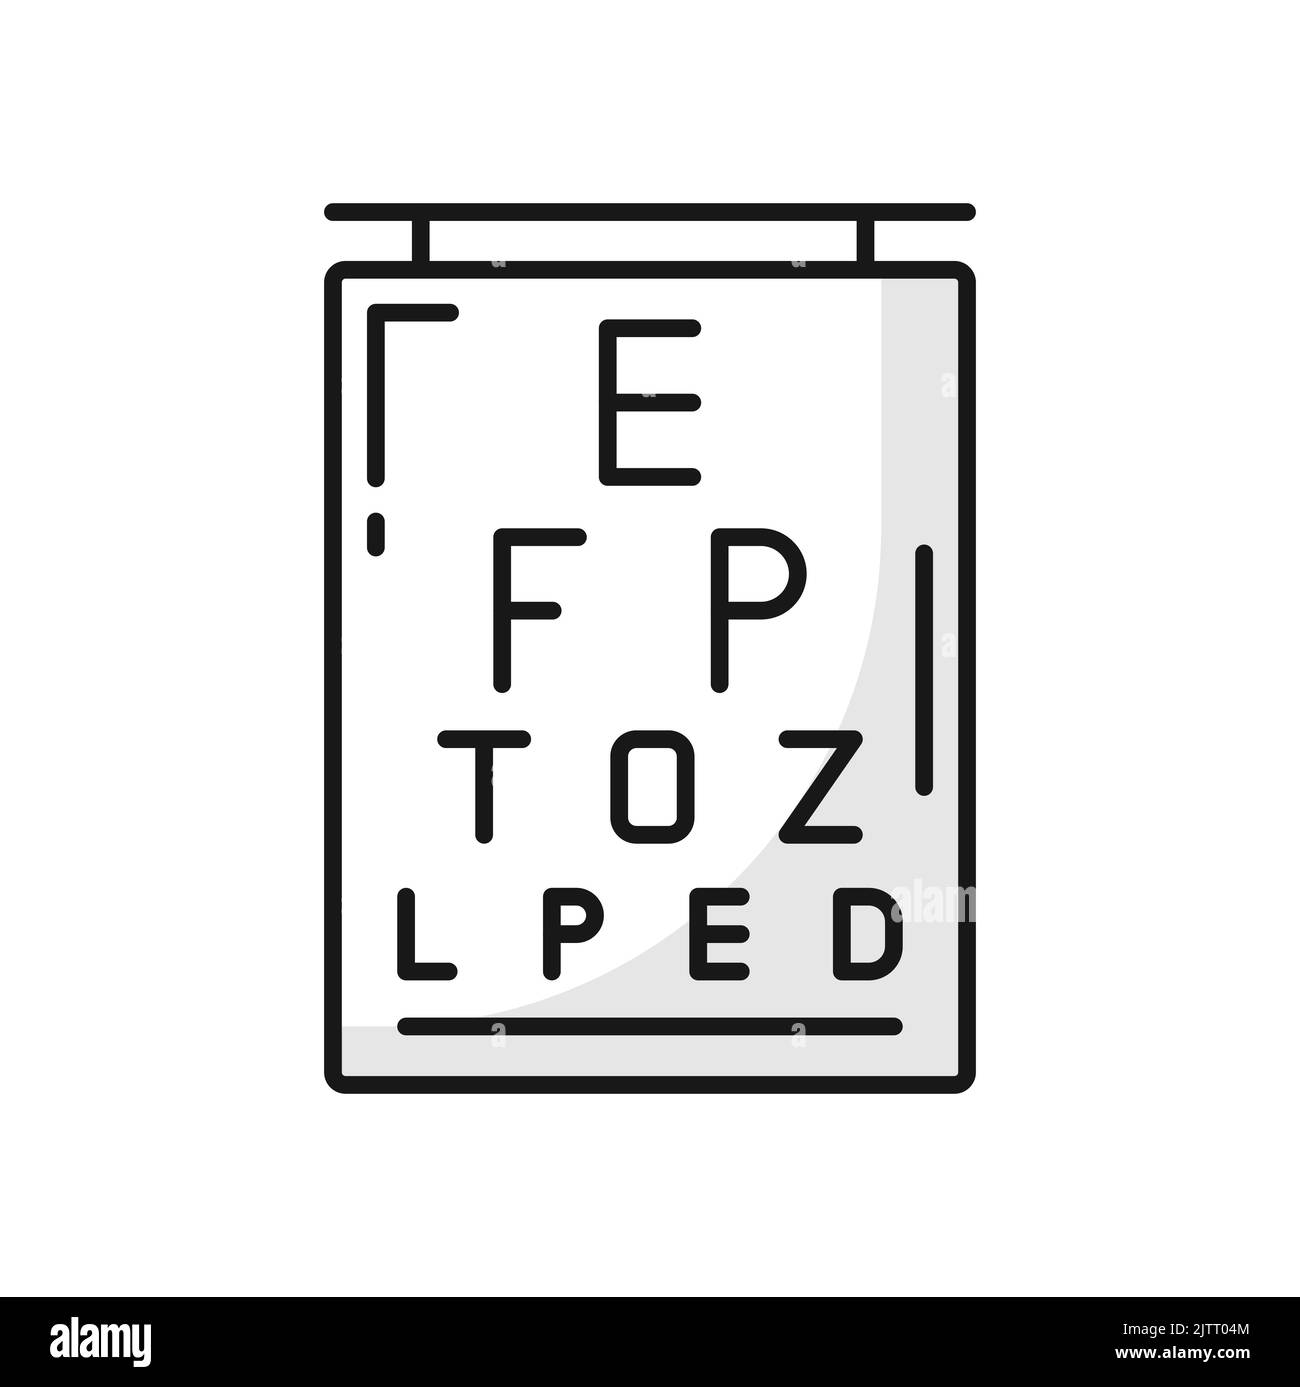 Mappa degli occhi, esame visivo o esame visivo icona vettore, esame oftalmologico. Mappa degli occhi, controllo visivo optometrico o esame visivo della vista, alfabeto optotipico o simboli Snellen o misura ottica Illustrazione Vettoriale